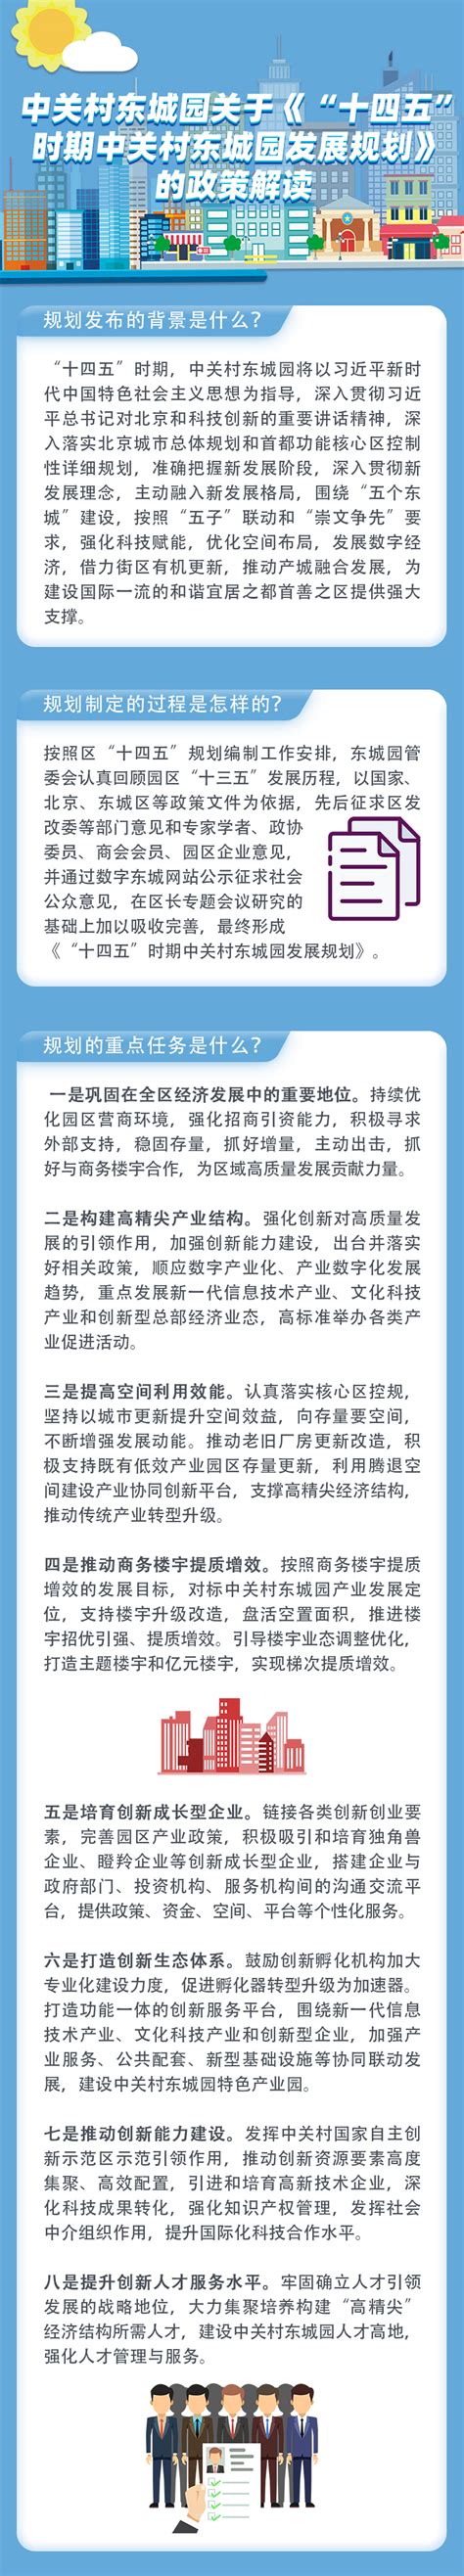 一图读懂—关于《东城区推进数字经济标杆城市建设行动方案（2022-2024年）》的政策解读_图片/视频_北京市东城区人民政府网站